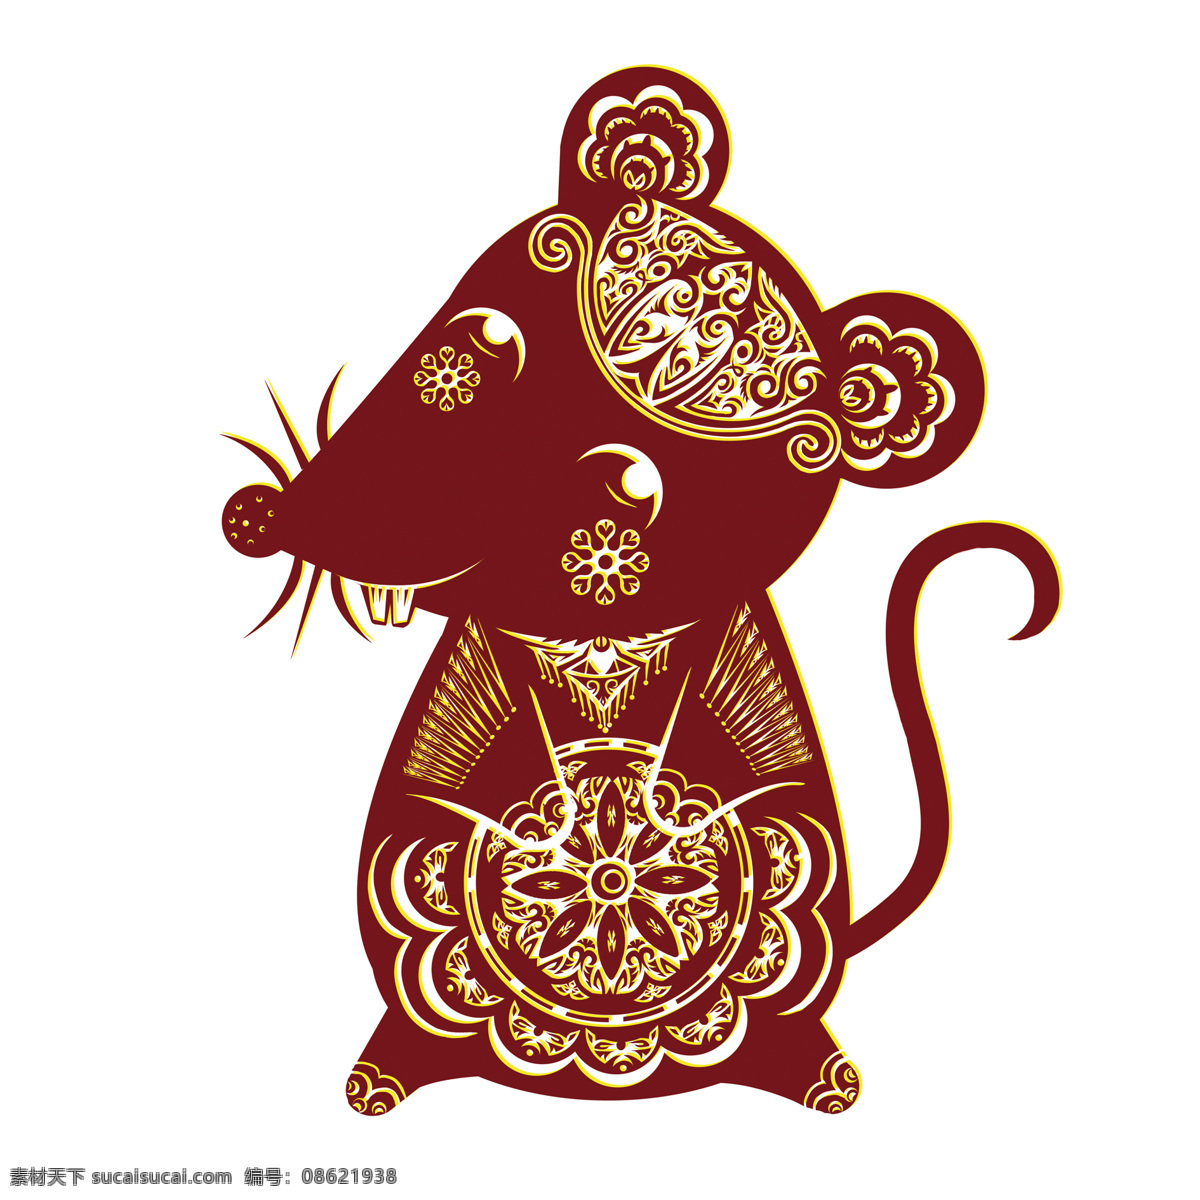 老鼠 动漫动画 过年 卡通 可爱 漫画 生肖鼠 老鼠设计素材 老鼠模板下载 鼠 鼠年 节日素材 2015 新年 元旦 春节 元宵